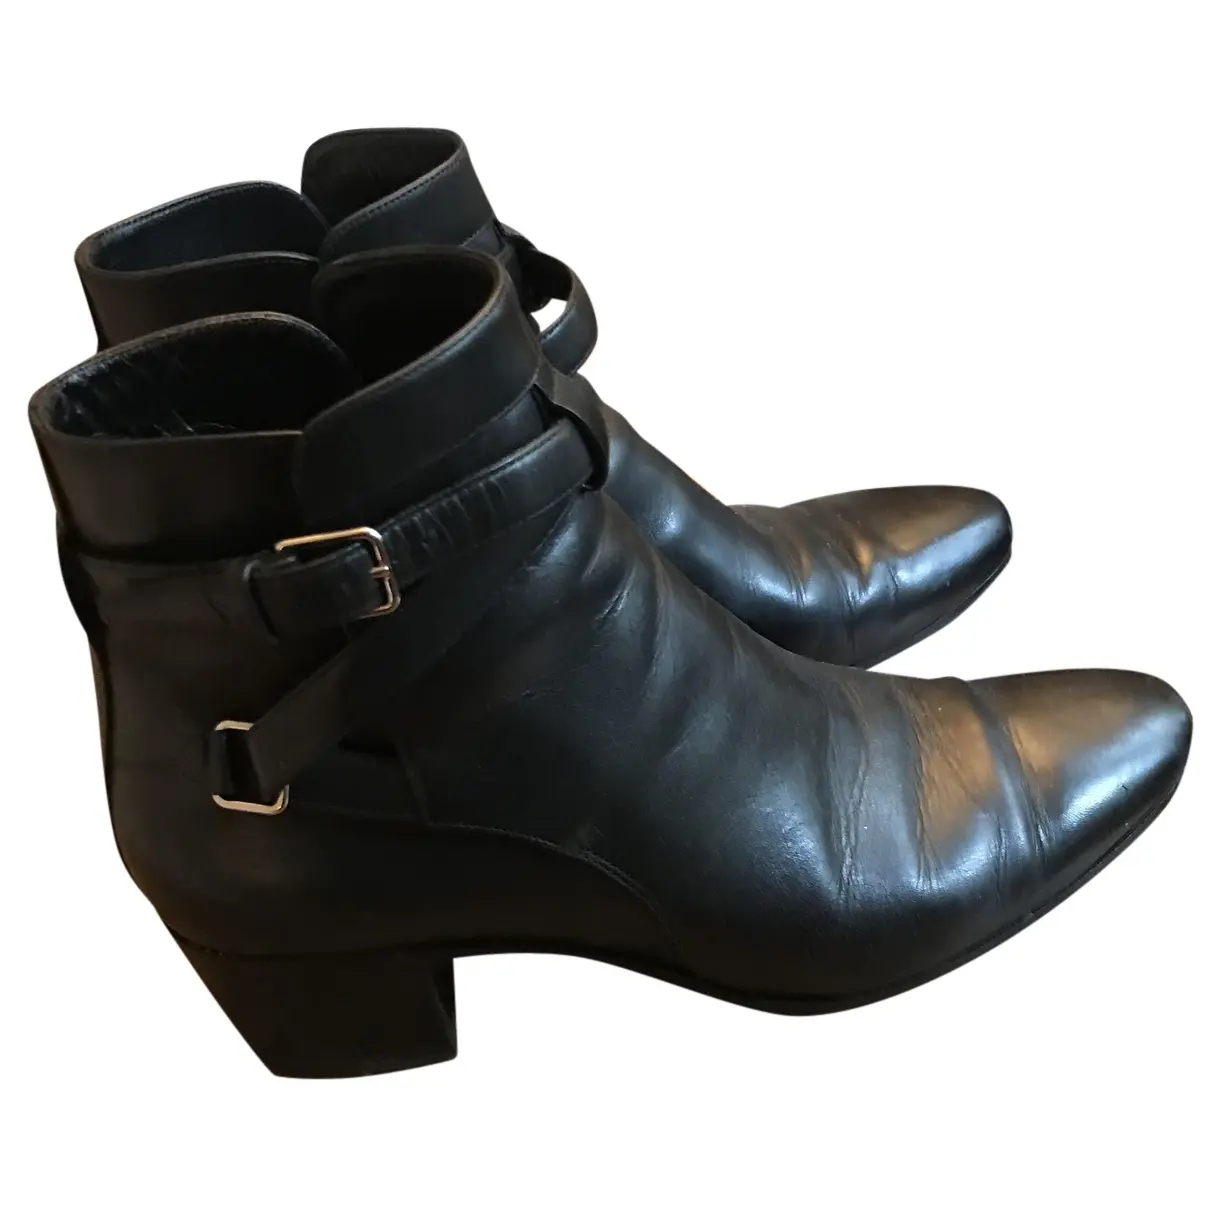 West Jodhpur leather ankle boots Saint Laurent